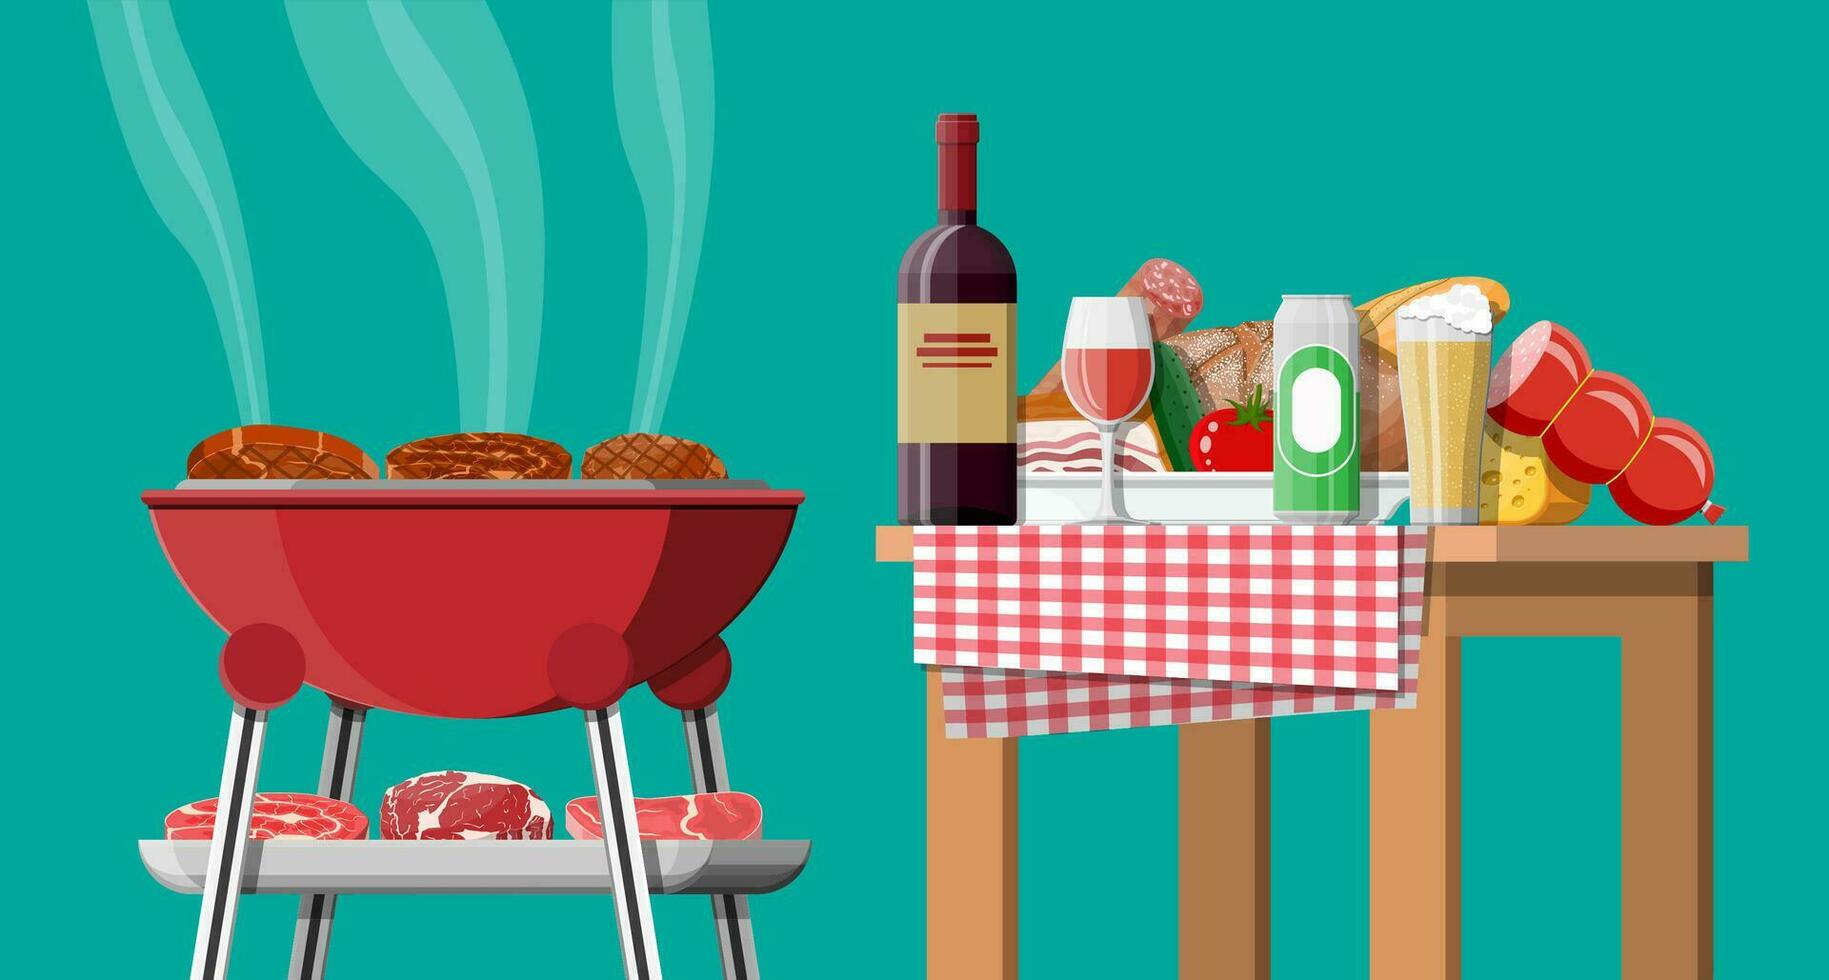 bbq partij of picknick. tafel met fles van wijn, groenten, kaas, kan van bier. elektrisch rooster met barbecue. Koken steak, vlees en worstjes, grillen barbecueën. vector illustratie vlak stijl